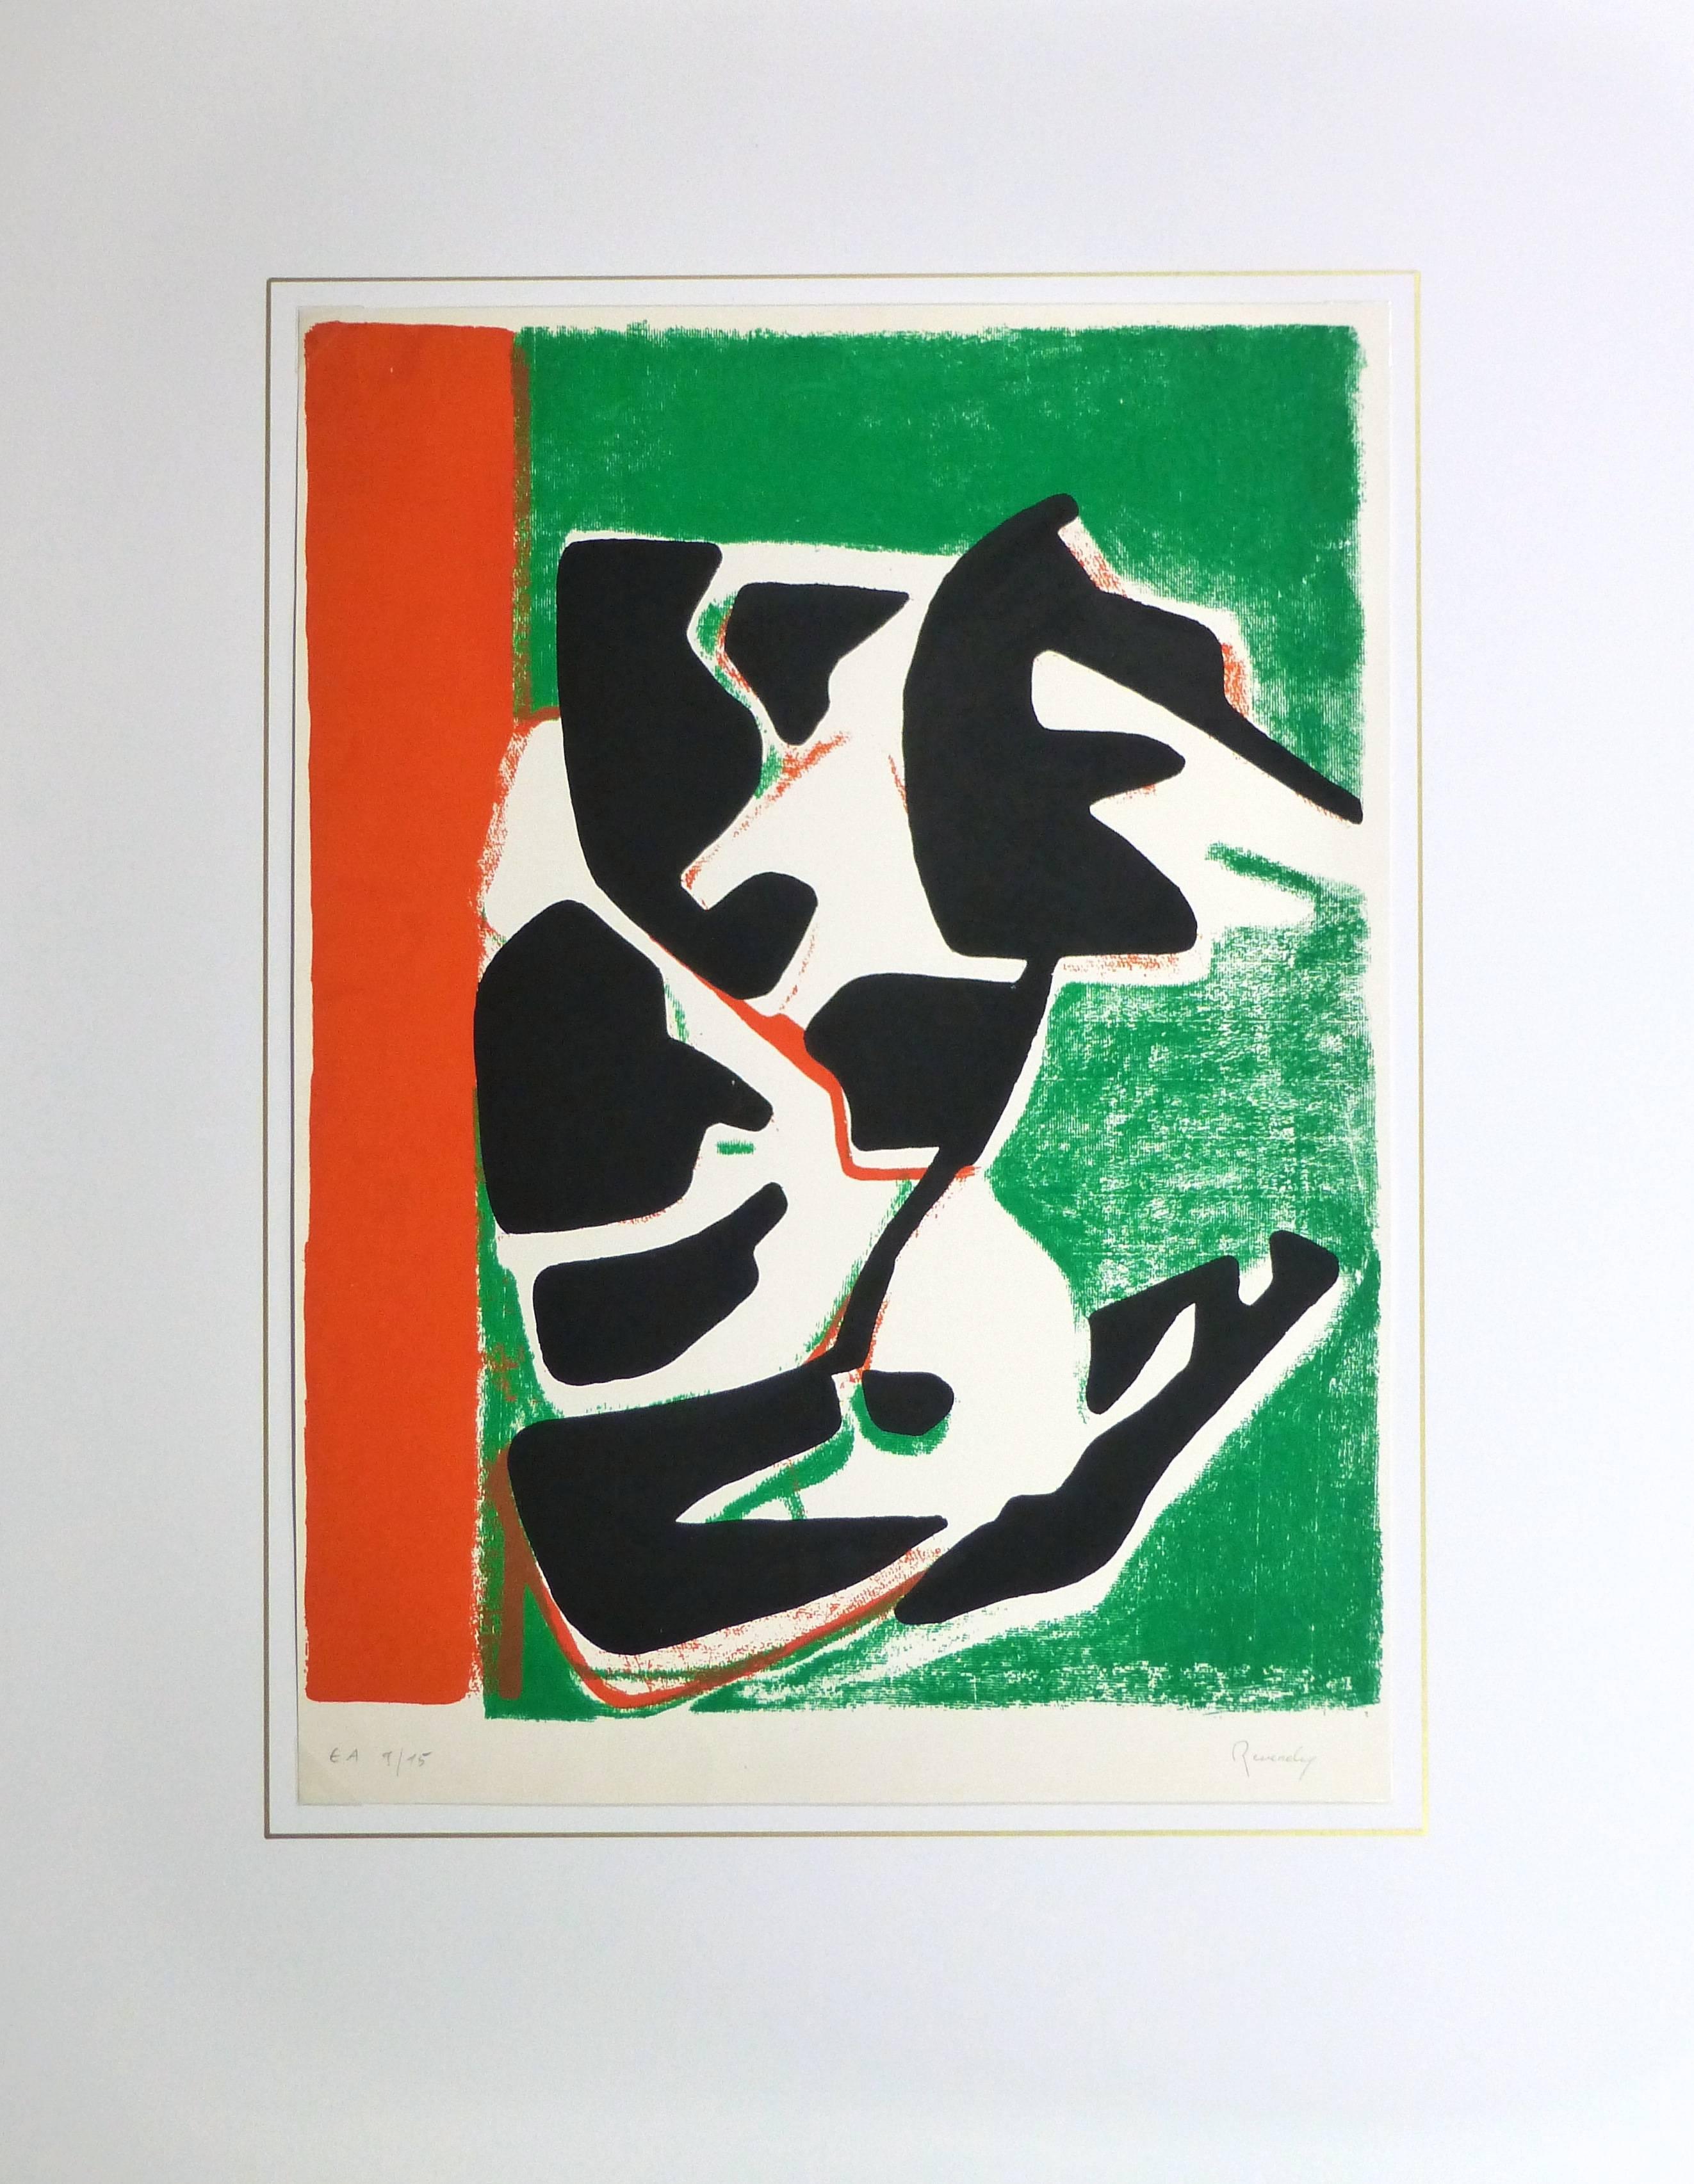 Résumé percutant  sérigraphie utilisant des couleurs vives de vert et d'orange pour accentuer un noir audacieux par l'artiste Reverdy, vers 1970. Signé en bas à droite, numéroté 9 sur 15 en bas à gauche.

Œuvre d'art originale sur papier présentée